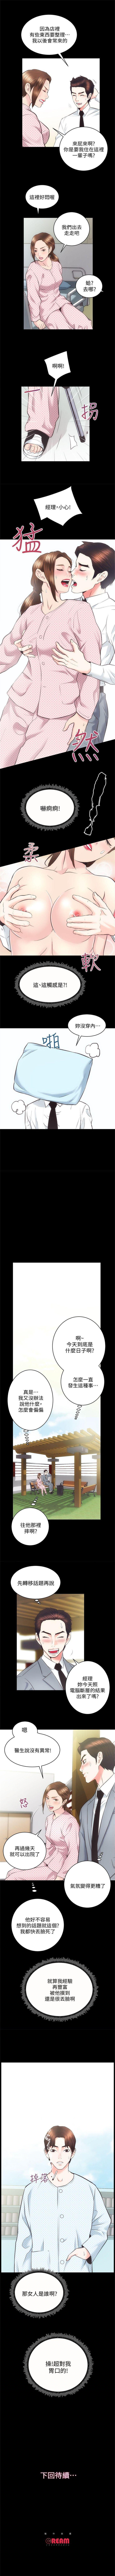 性溢房屋 1-20 中文翻译（应求更新中） 123